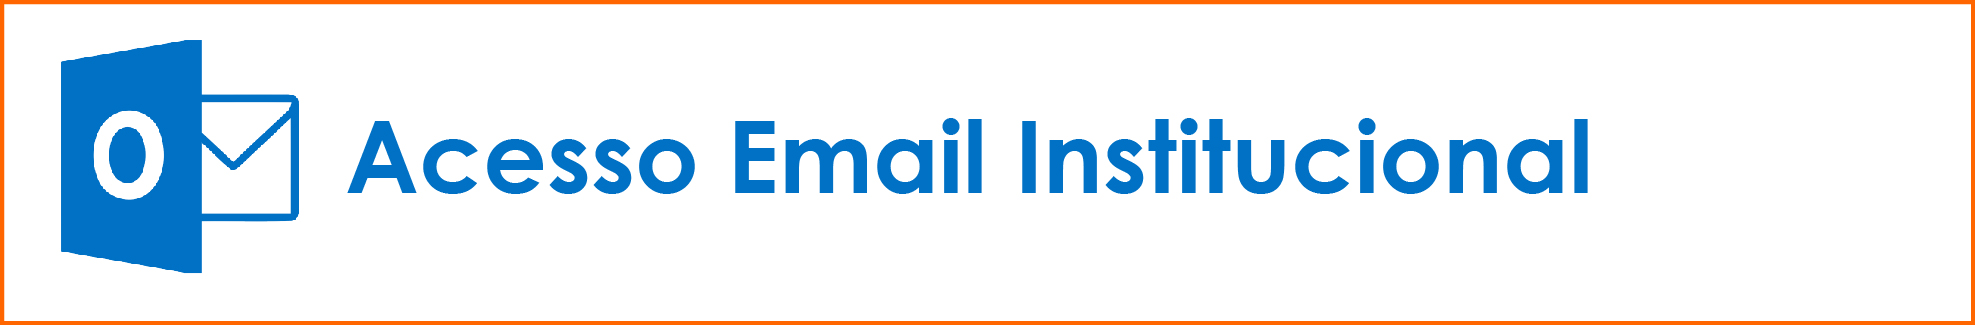 Email Institucional